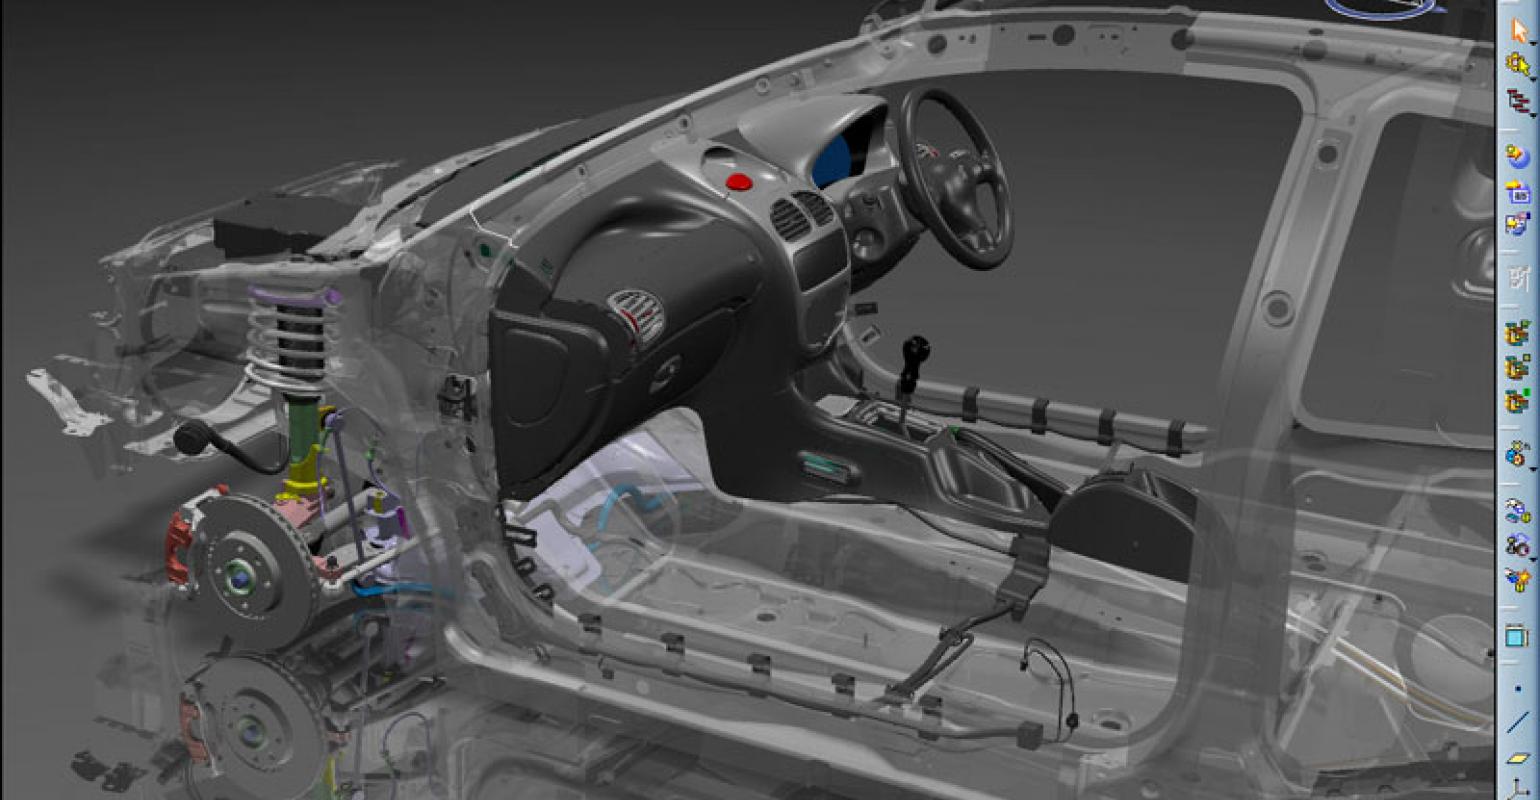 Automotive da zona sul 4. Catia 3d моделирование. САПР Catia 3d. 3d модель Tesla k80 охлаждение. Проектирование кузова автомобиля.